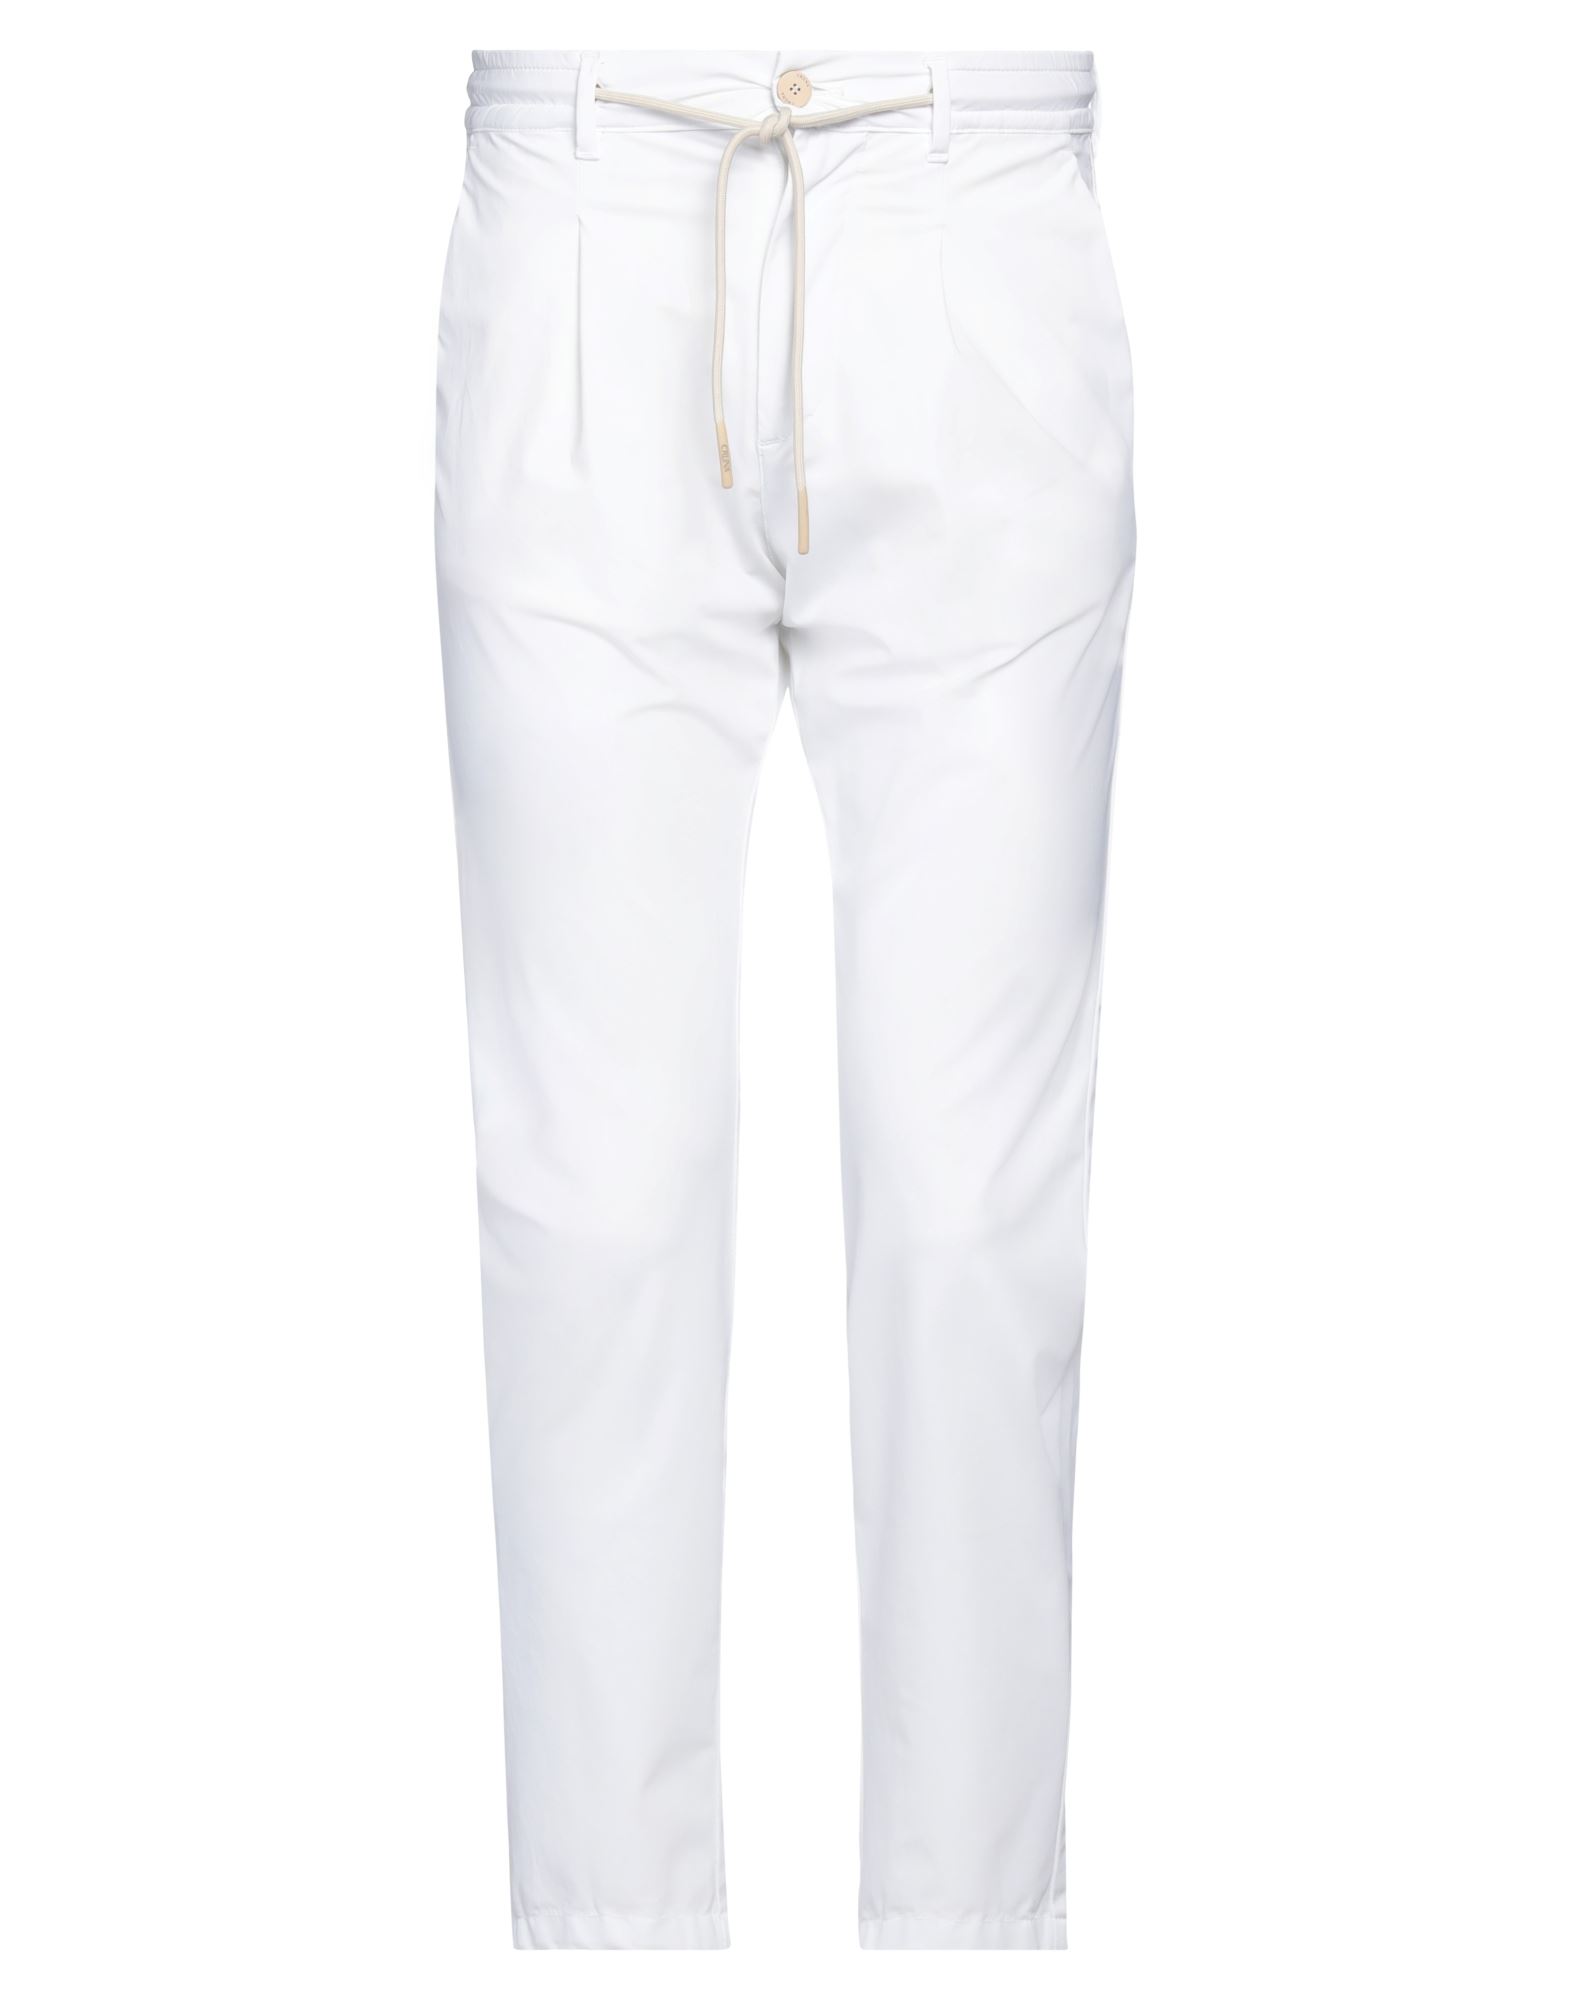 Cruna Pants In White